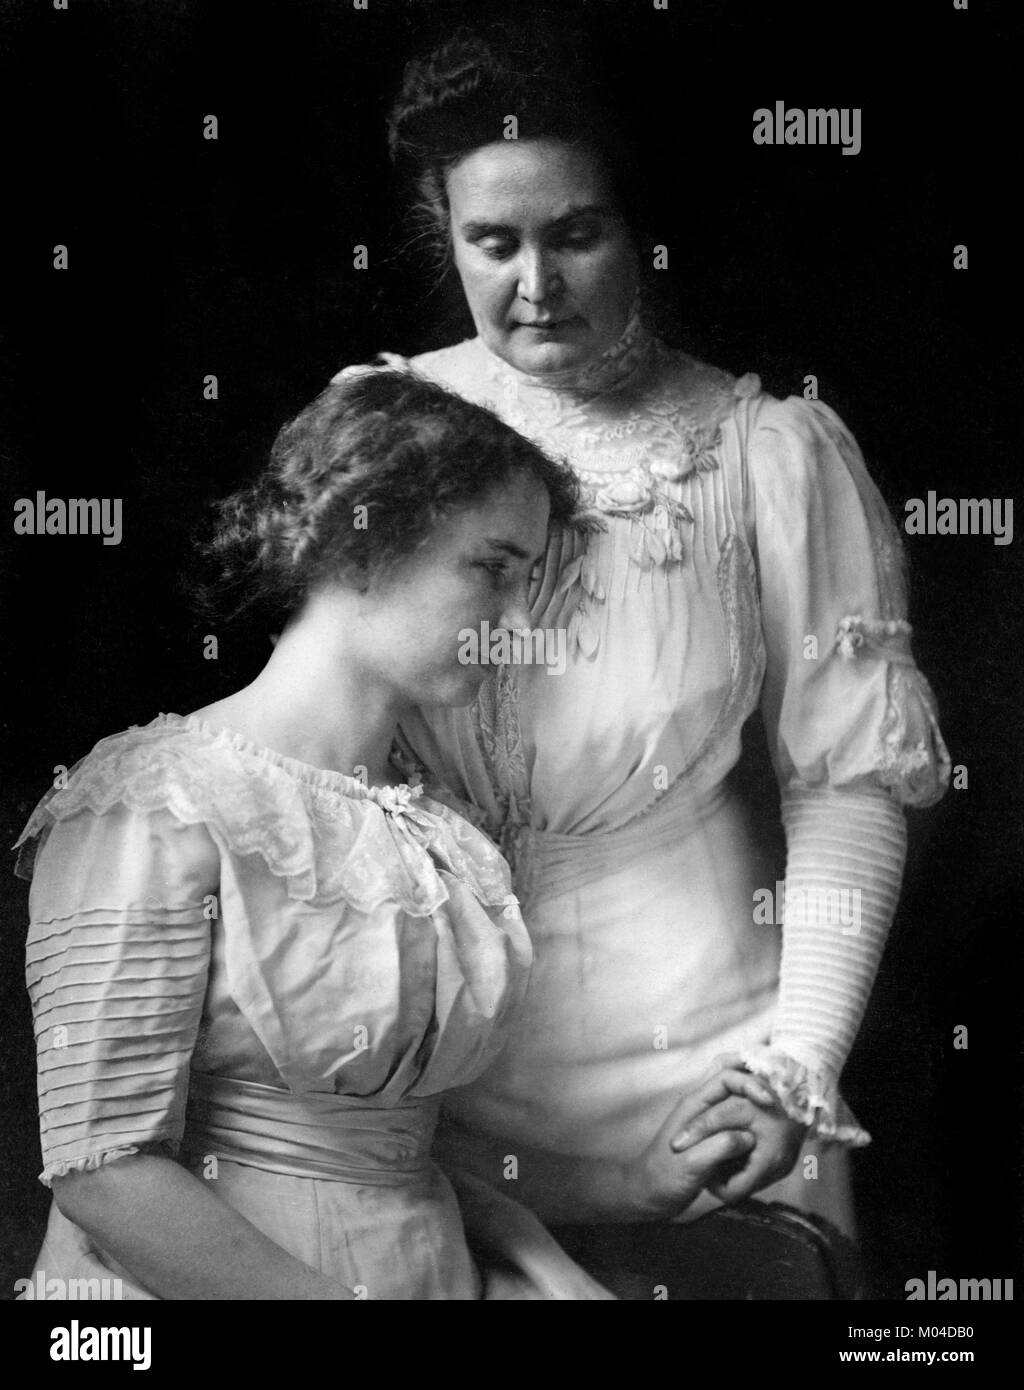 Helen Keller (1880-1968) und Anne Sullivan. Photograph der taubblinden Autorin und politischen Aktivistin mit ihrer Lehrerin und Begleiterin, c,1909 Stockfoto